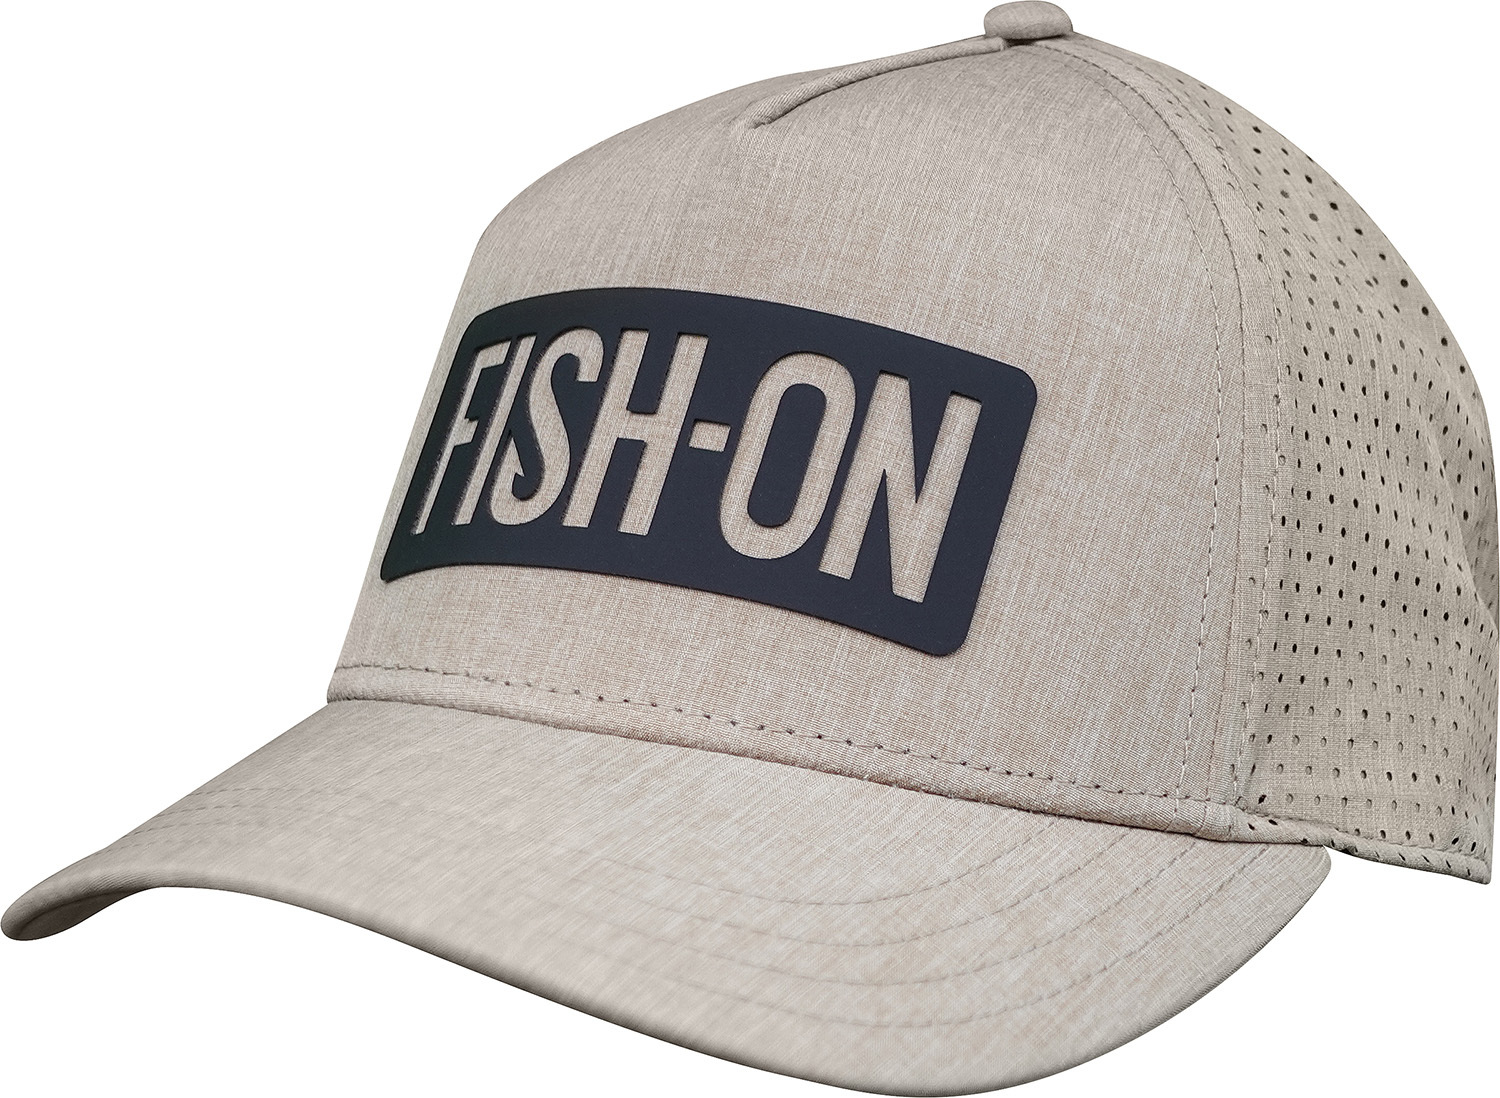 FISH-ON Trucker Hat Curved Bill – Khaki – Store – TEMPRESS